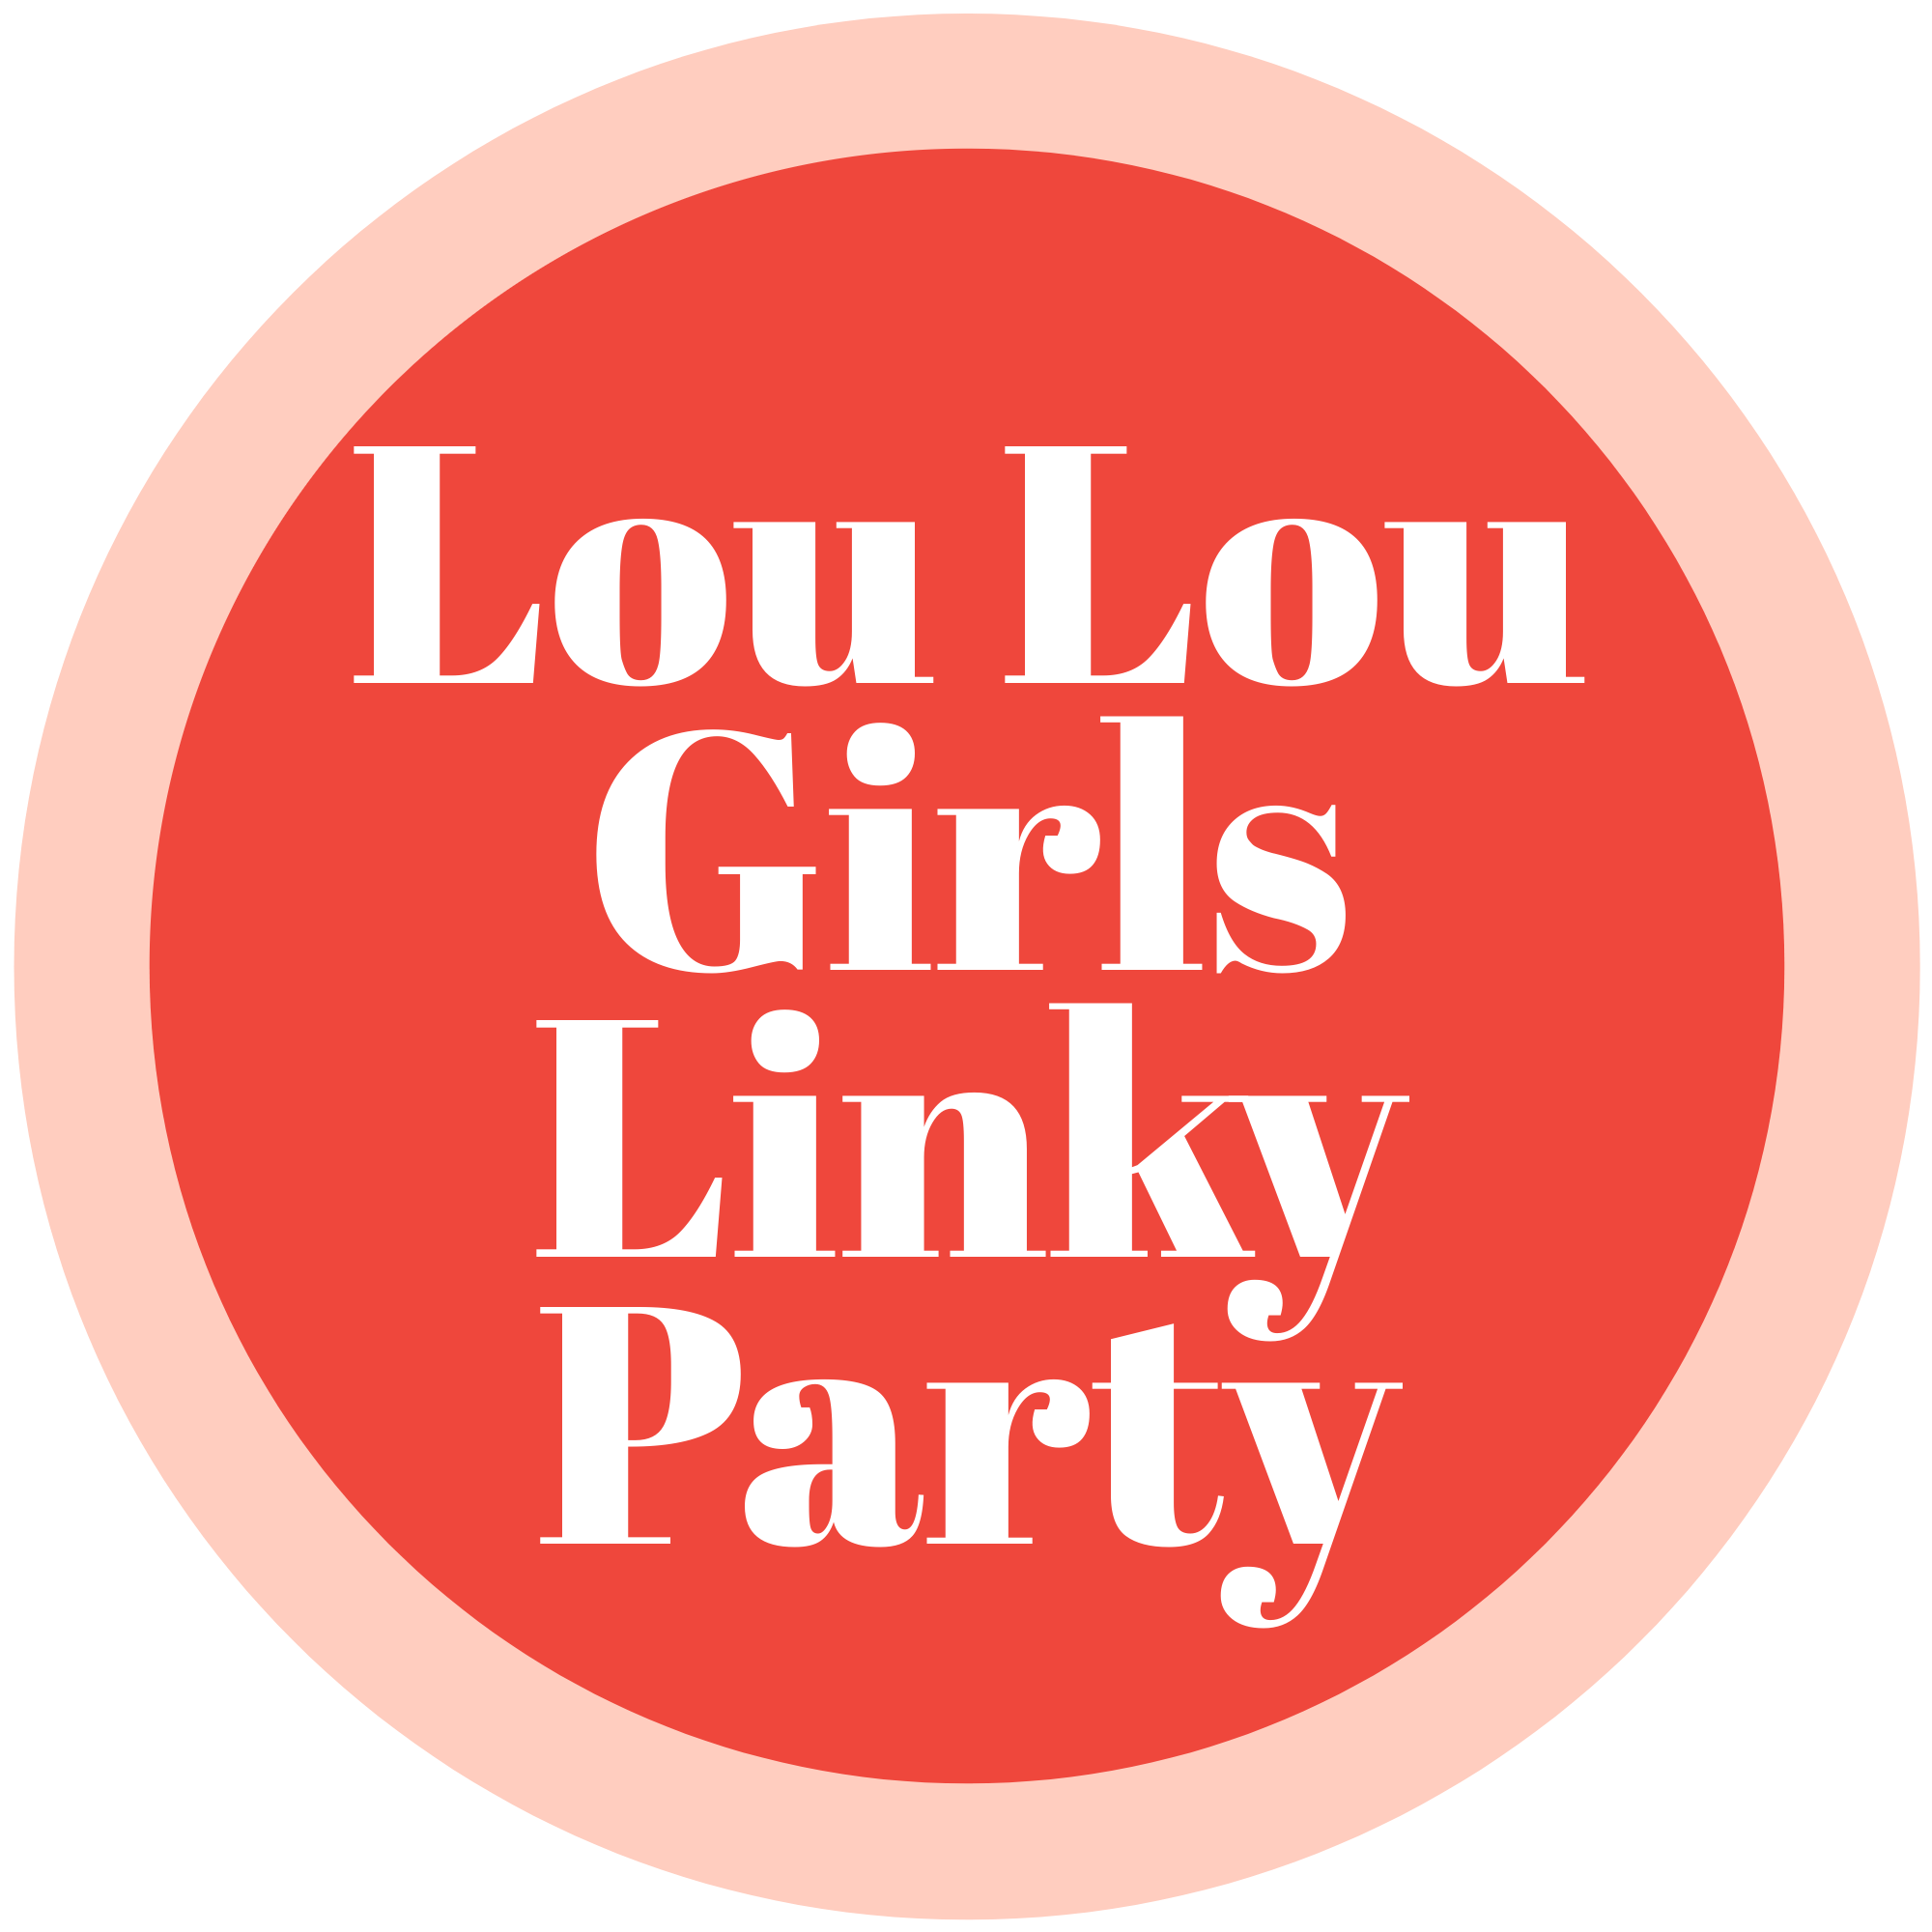 LOU LOU GIRLS FABULOUS PARTY 526